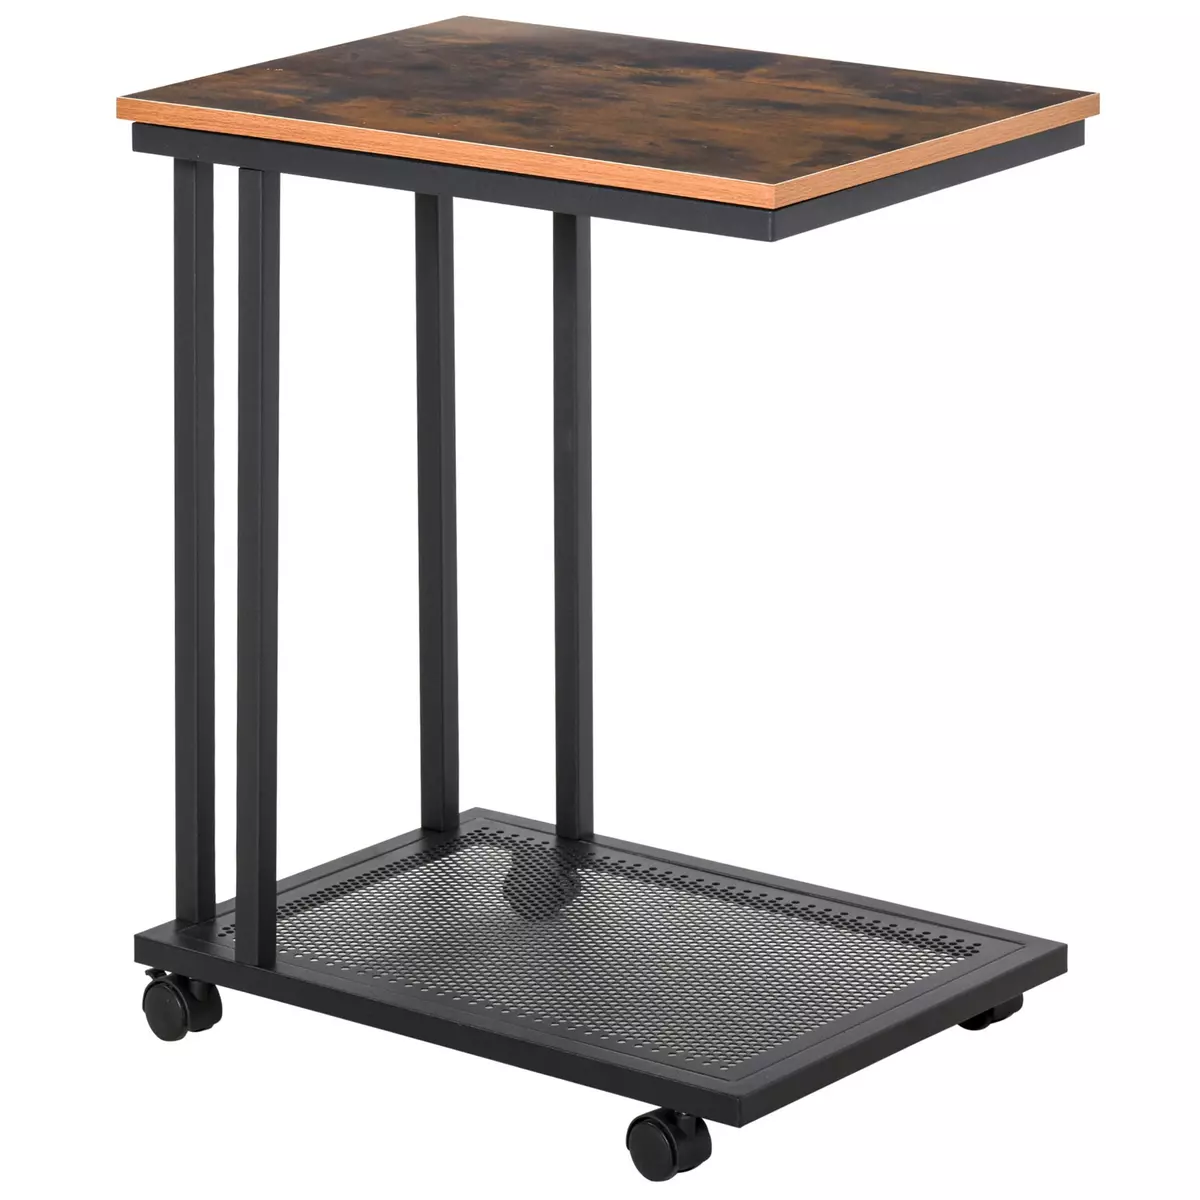 HOMCOM Table basse table d'appoint Vintage style industriel étagère acier noir MDF coloris boisé